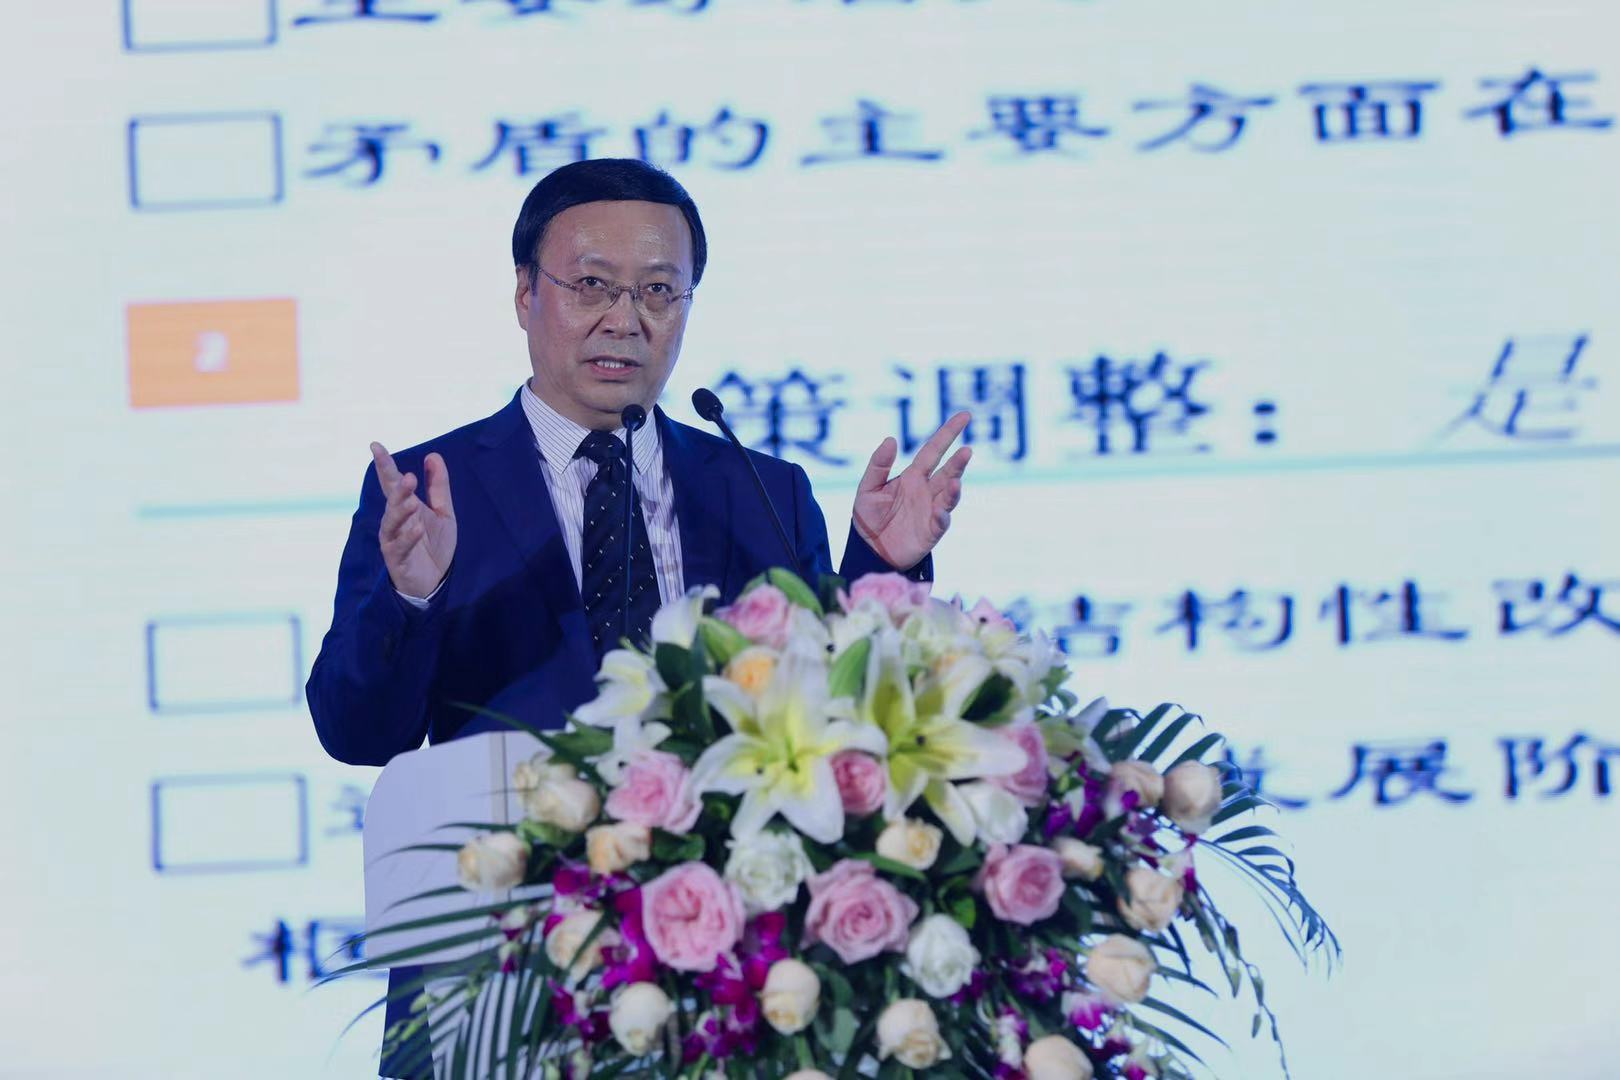 中国社会科学院副院长高培勇发表演讲